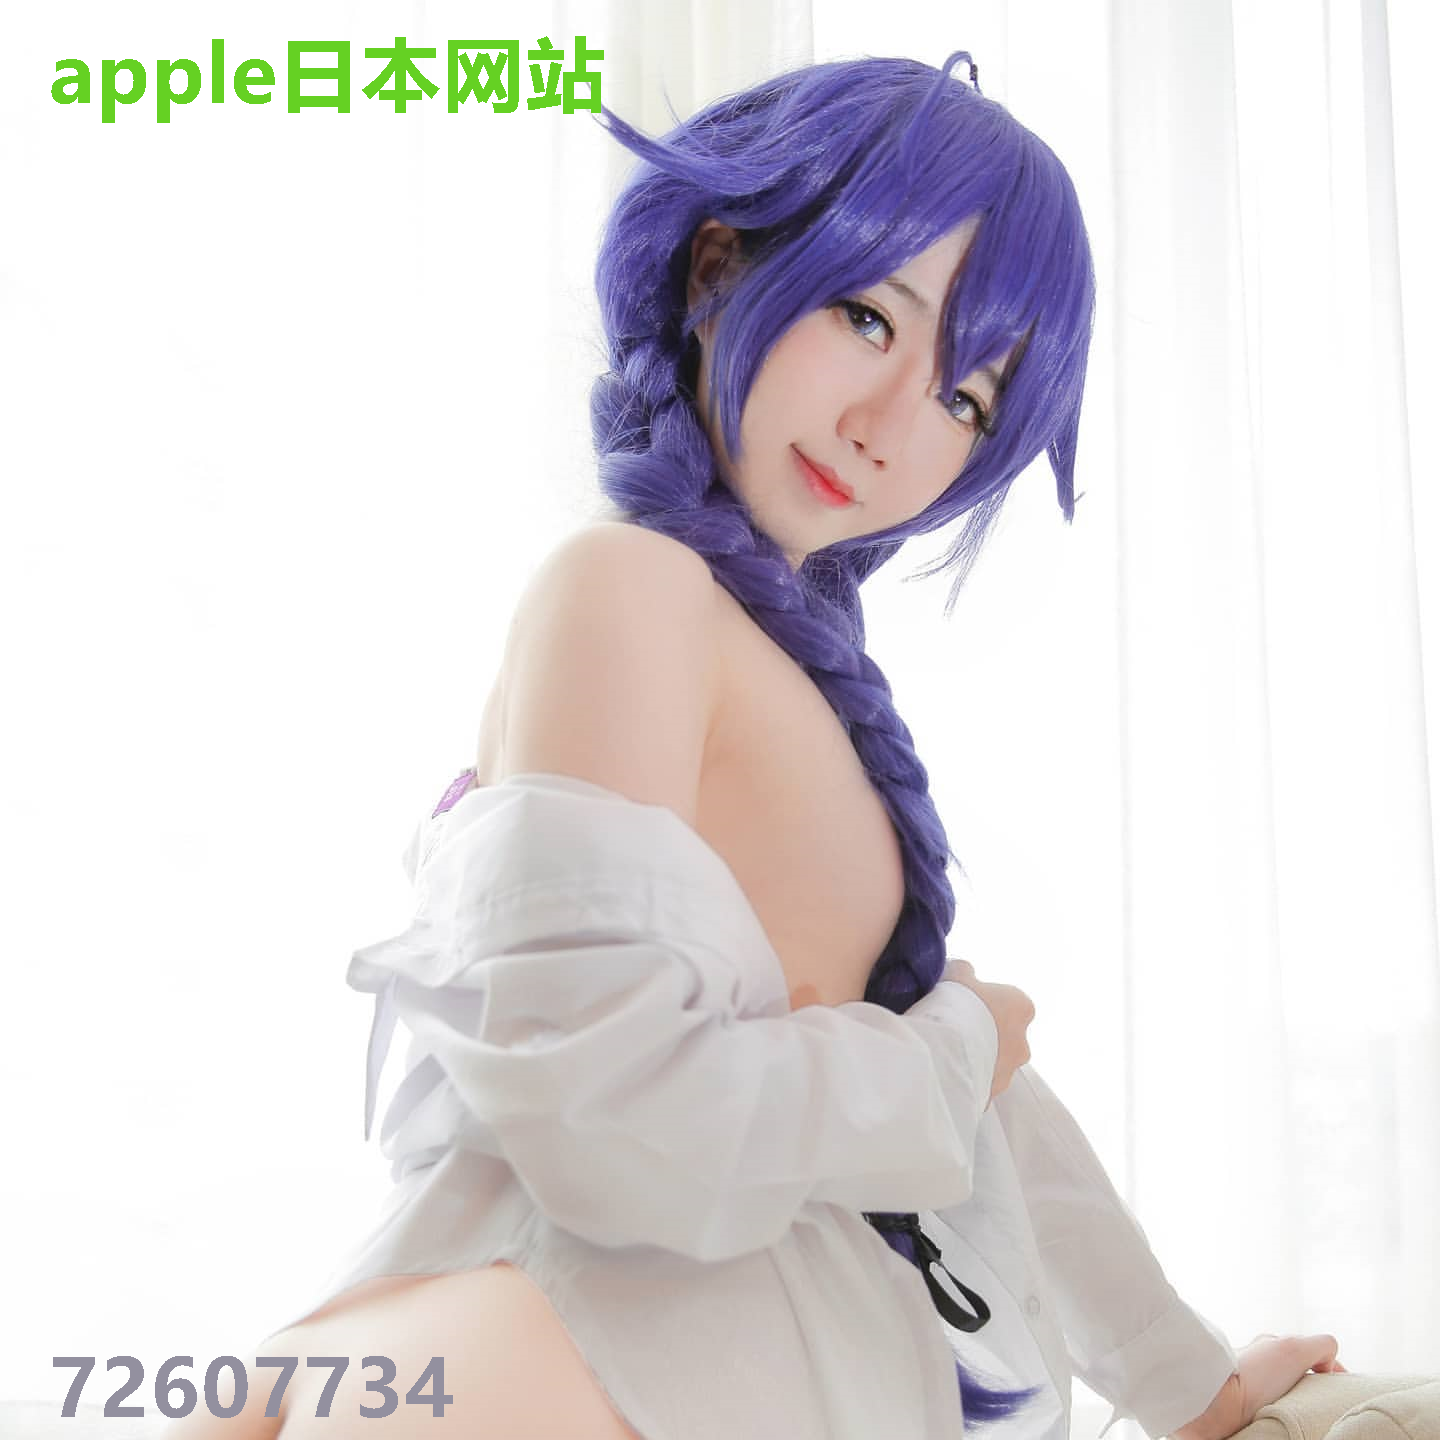 apple日本网站